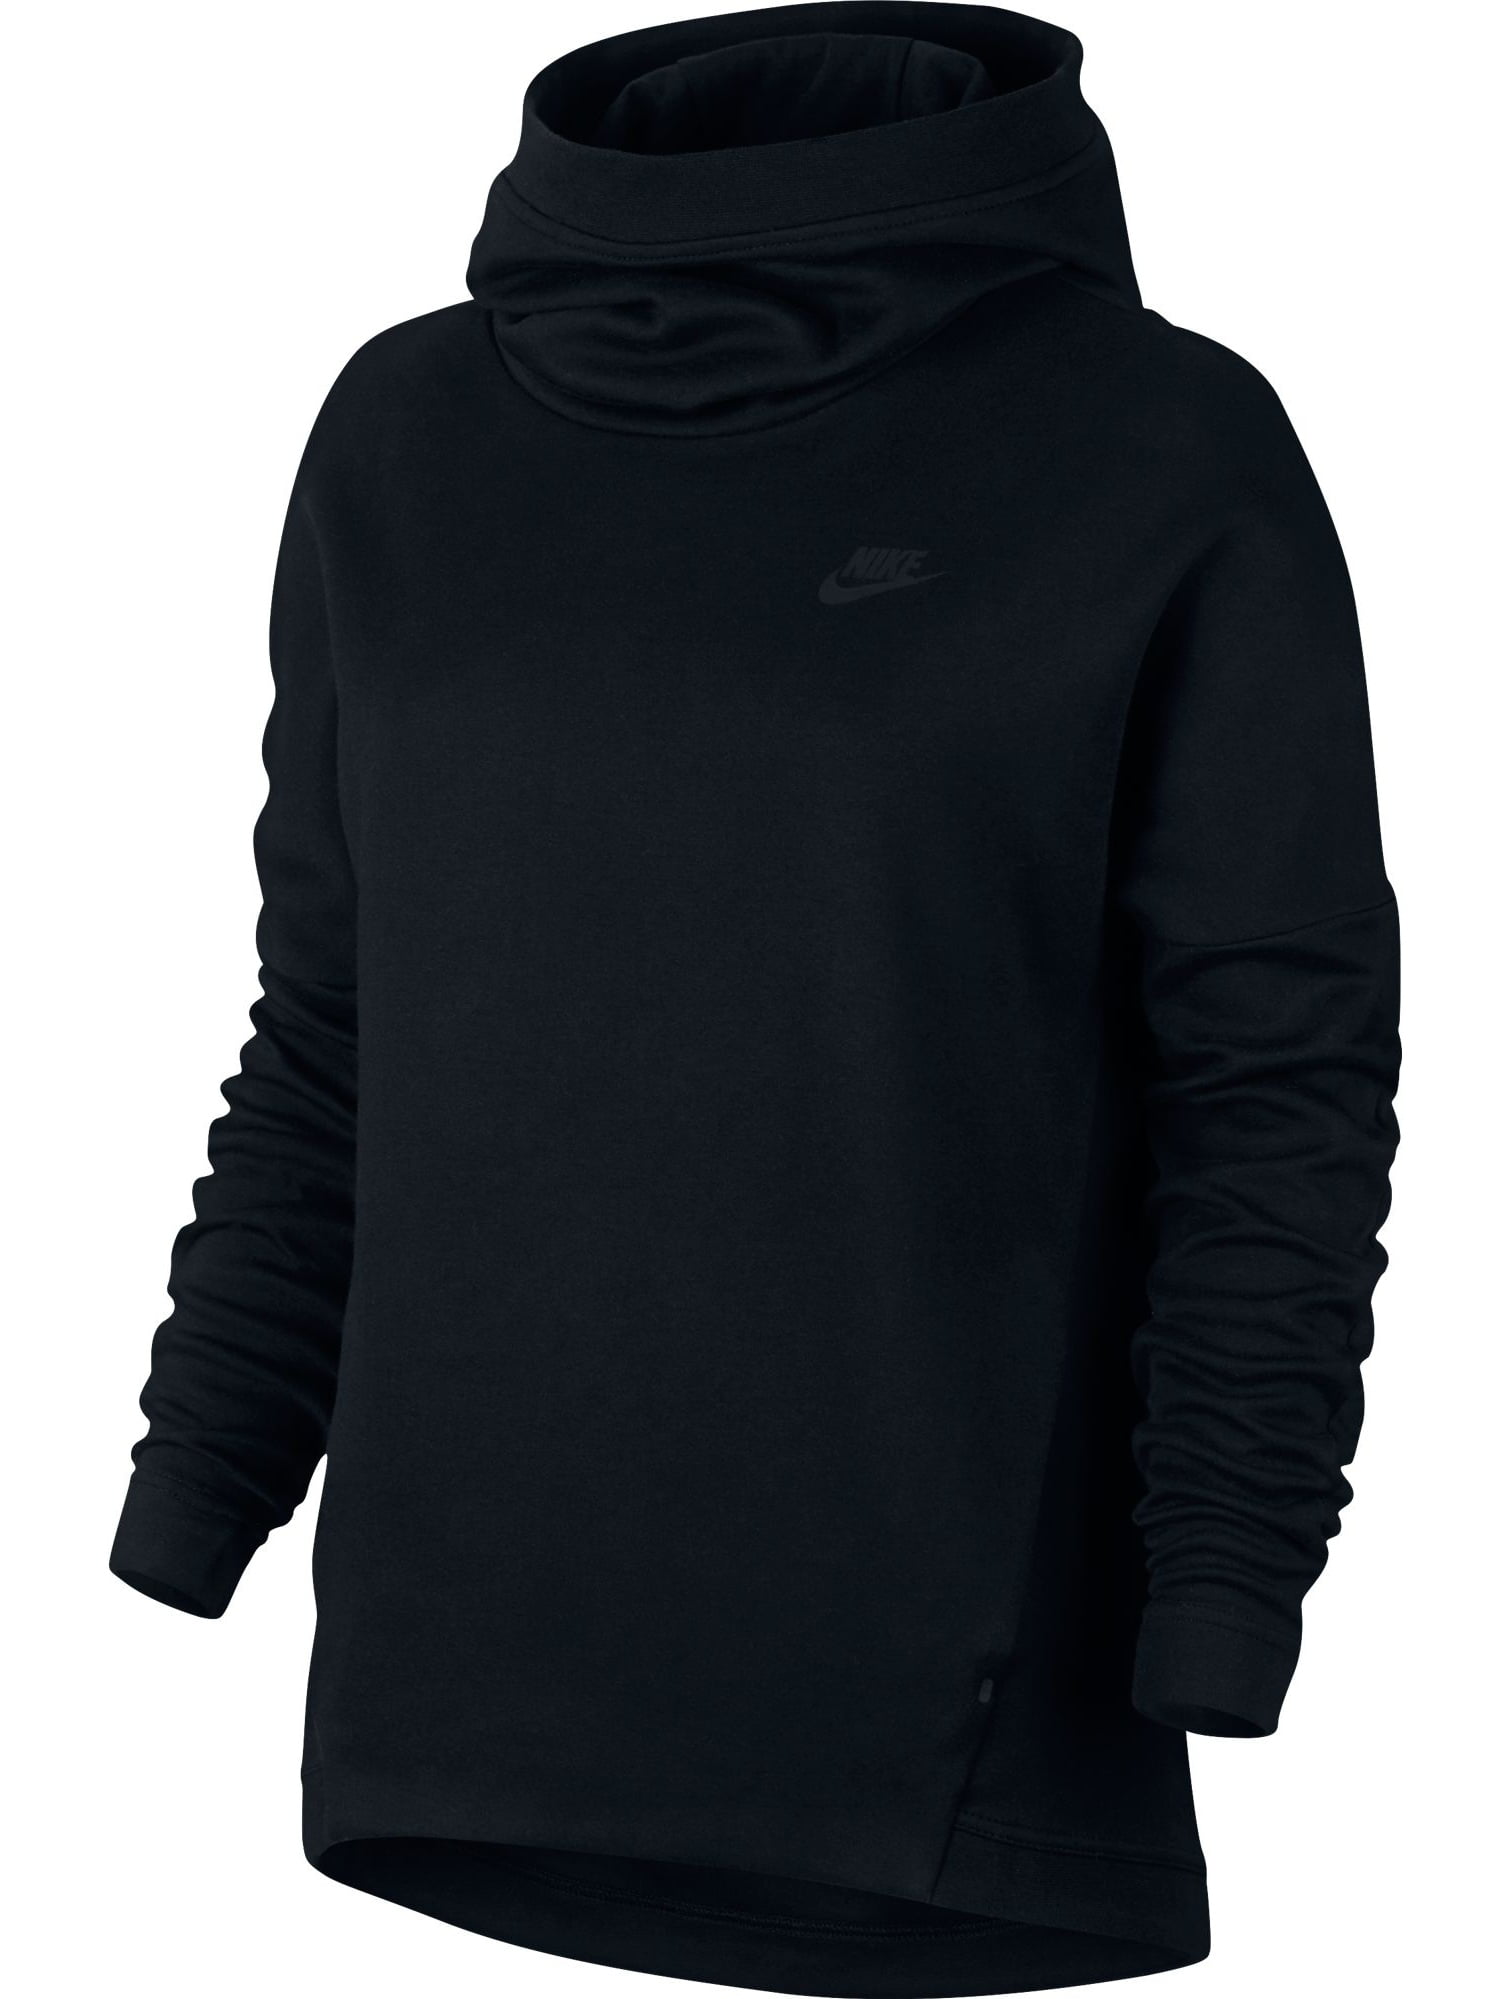 nike-nike-sportswear-tech-fleece-women-s-longsleeve-pullover-hoodie